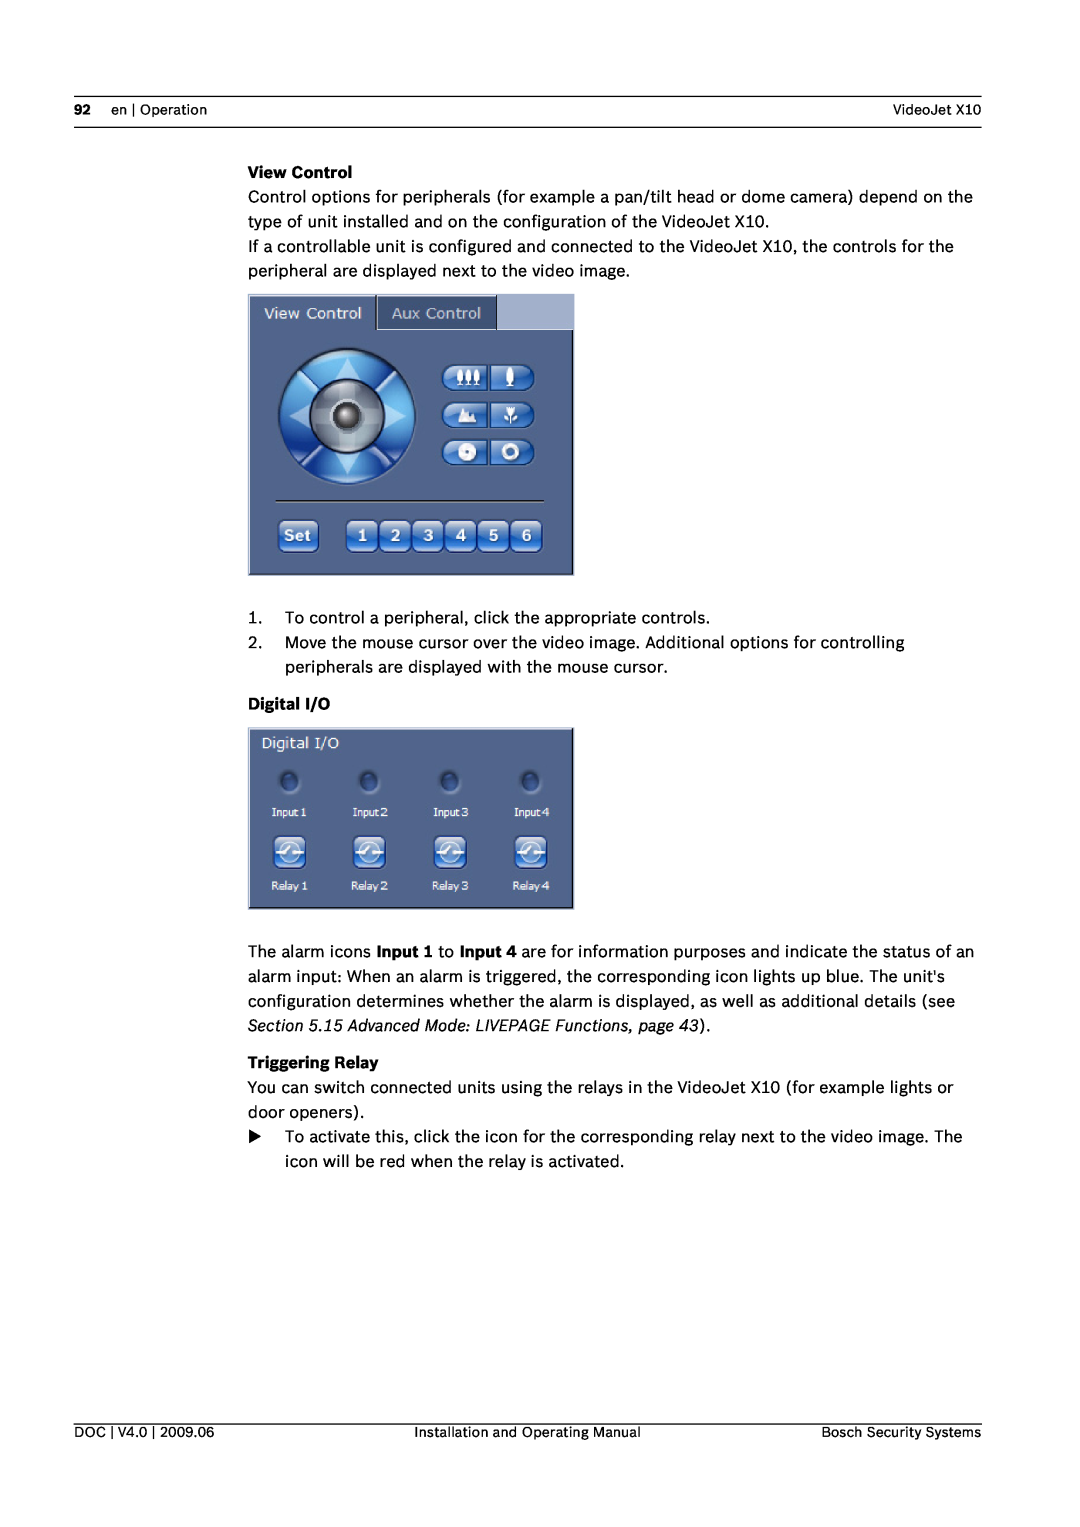 Bosch Appliances X10 manual View Control, Digital I/O, Triggering Relay 